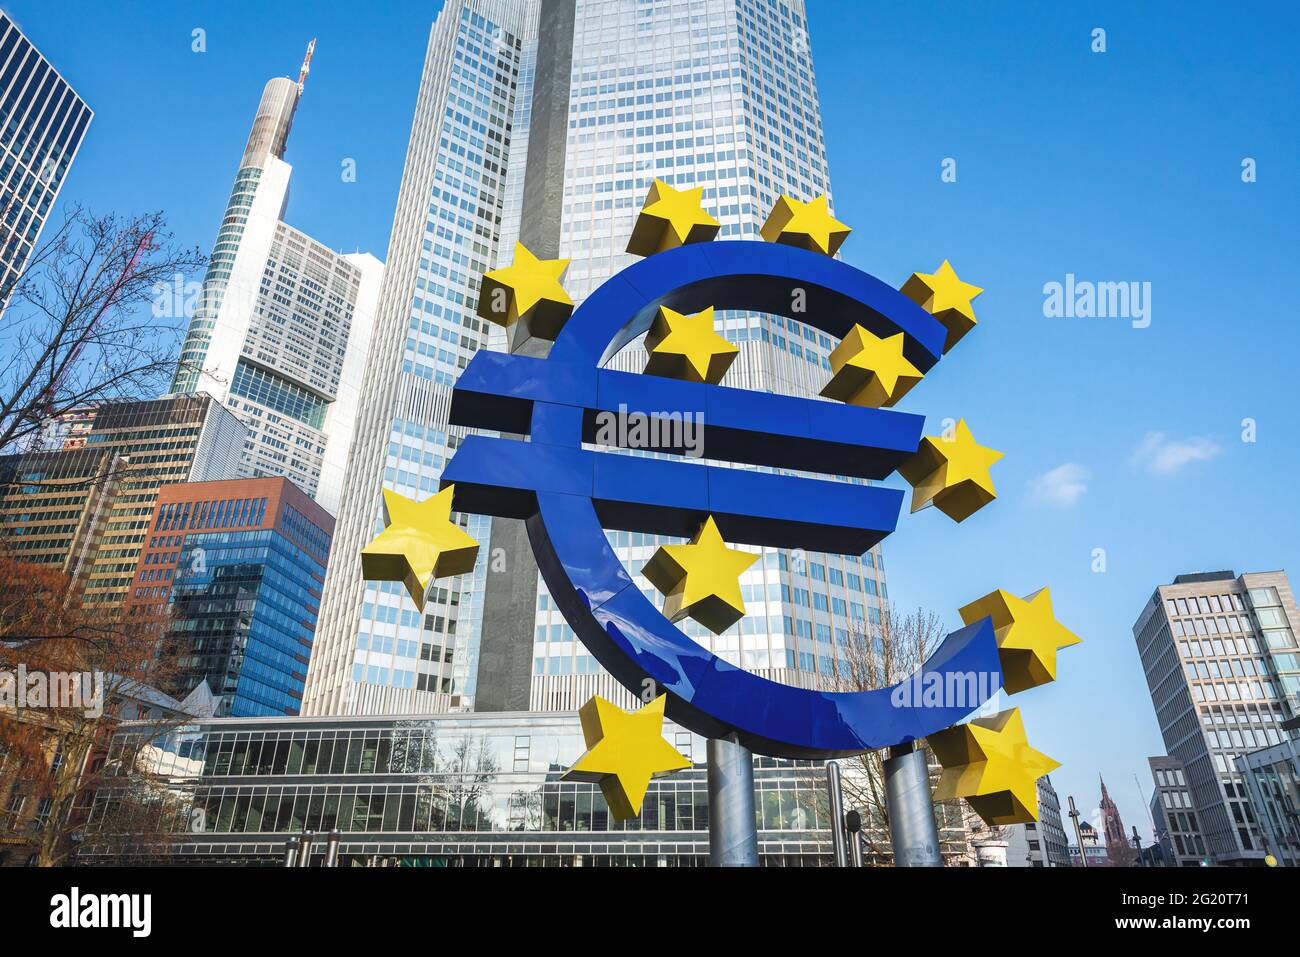 Sculpture avec signe et étoiles de l'euro - signe de la monnaie pour l'euro utilisé dans la zone euro de l'Union européenne - Francfort, Banque D'Images